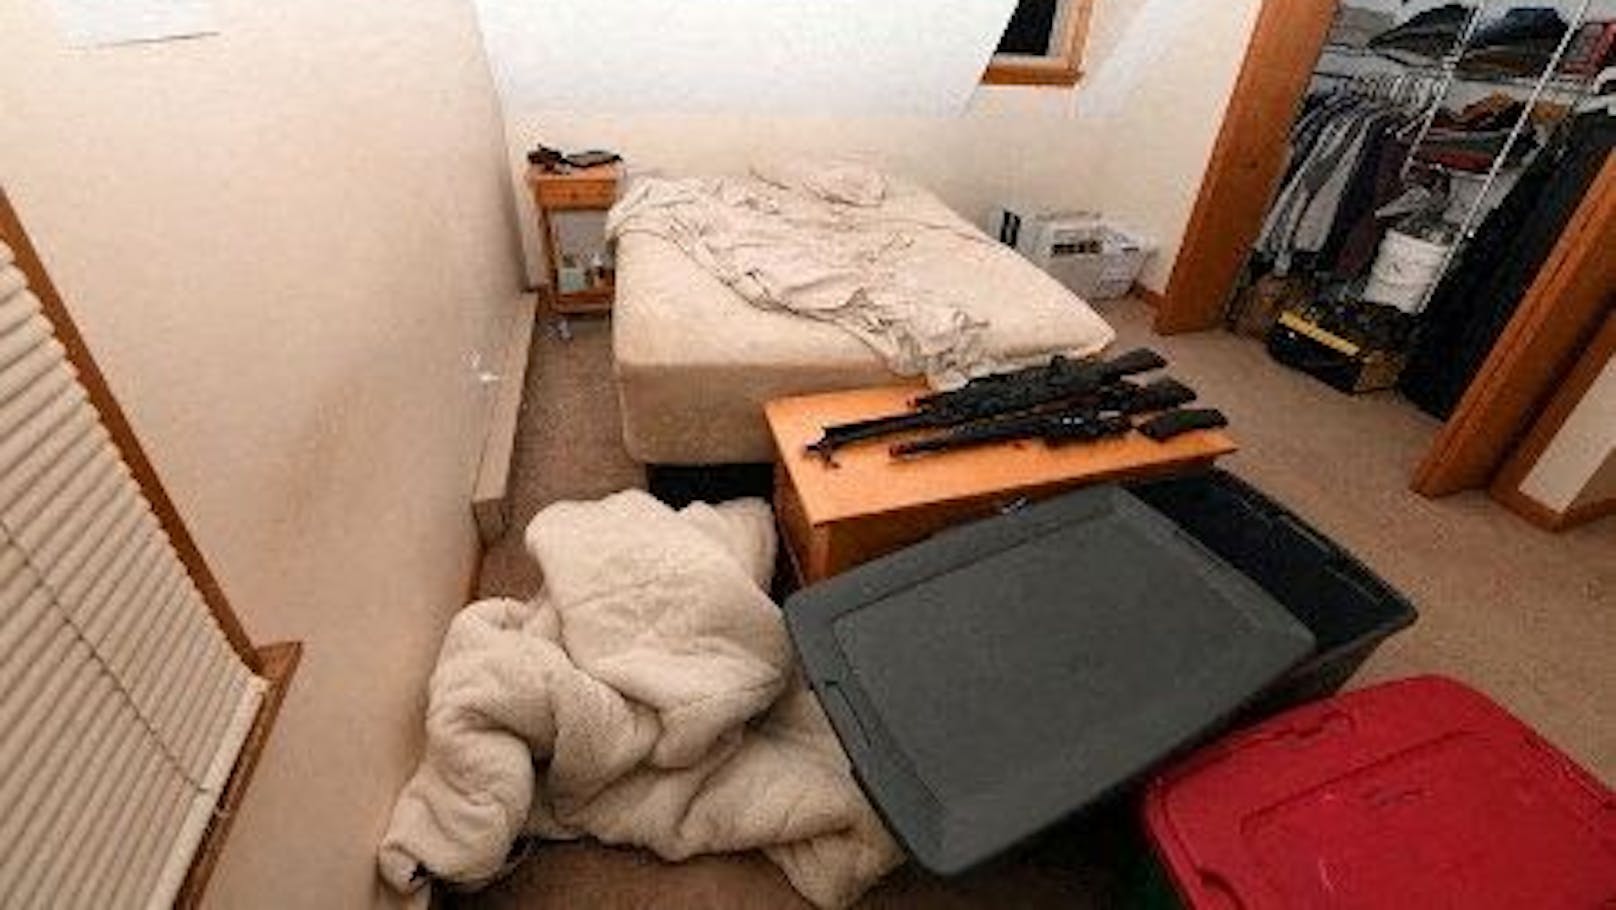 Der Angeklagte bewahrte Waffen unmittelbar neben seinem Bett auf.